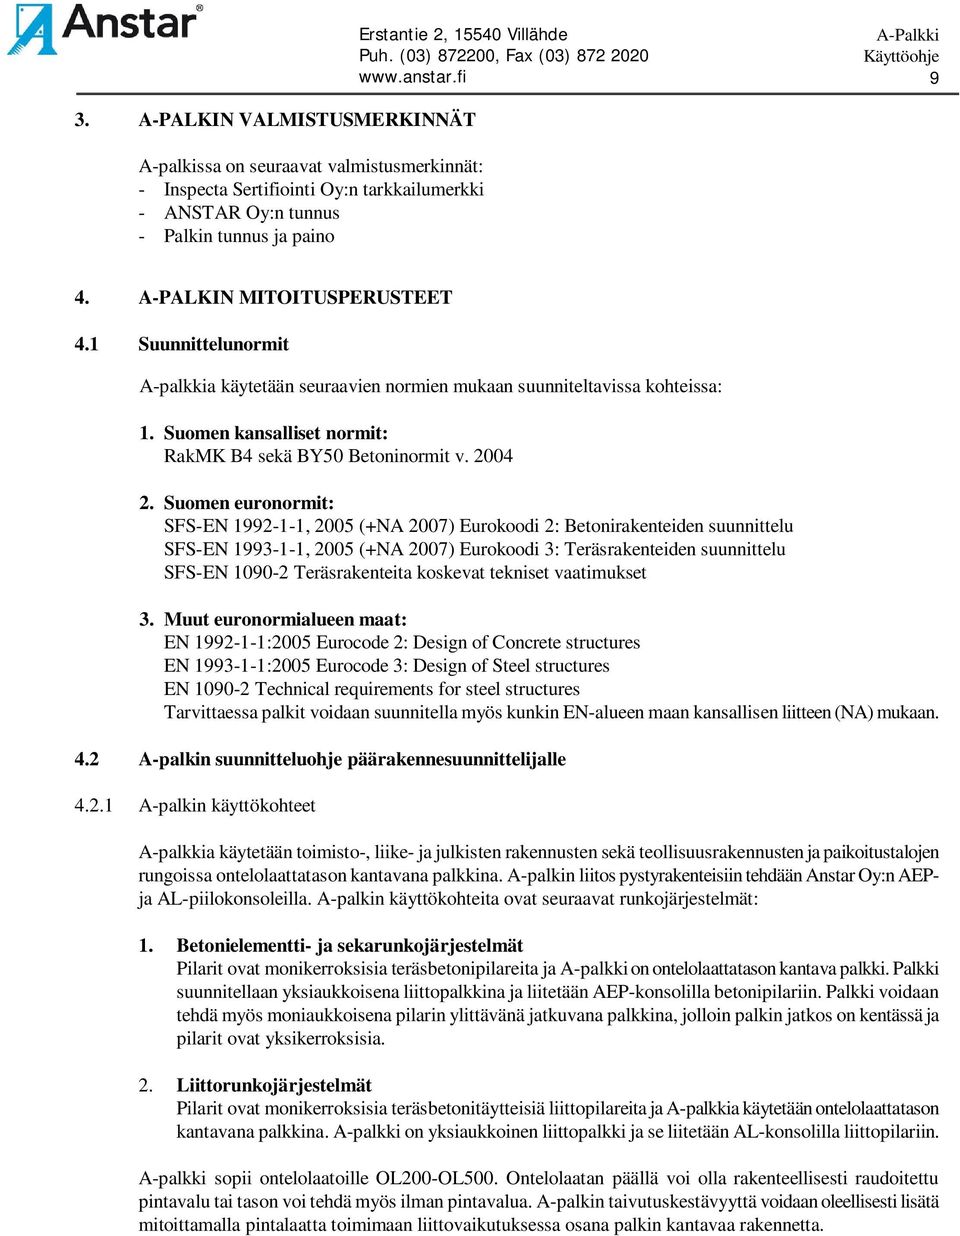 Suomen euronormit: SFS-EN 1992-1-1, 2005 (+NA 2007) Eurokoodi 2: Betonirakenteiden suunnittelu SFS-EN 1993-1-1, 2005 (+NA 2007) Eurokoodi 3: Teräsrakenteiden suunnittelu SFS-EN 1090-2 Teräsrakenteita